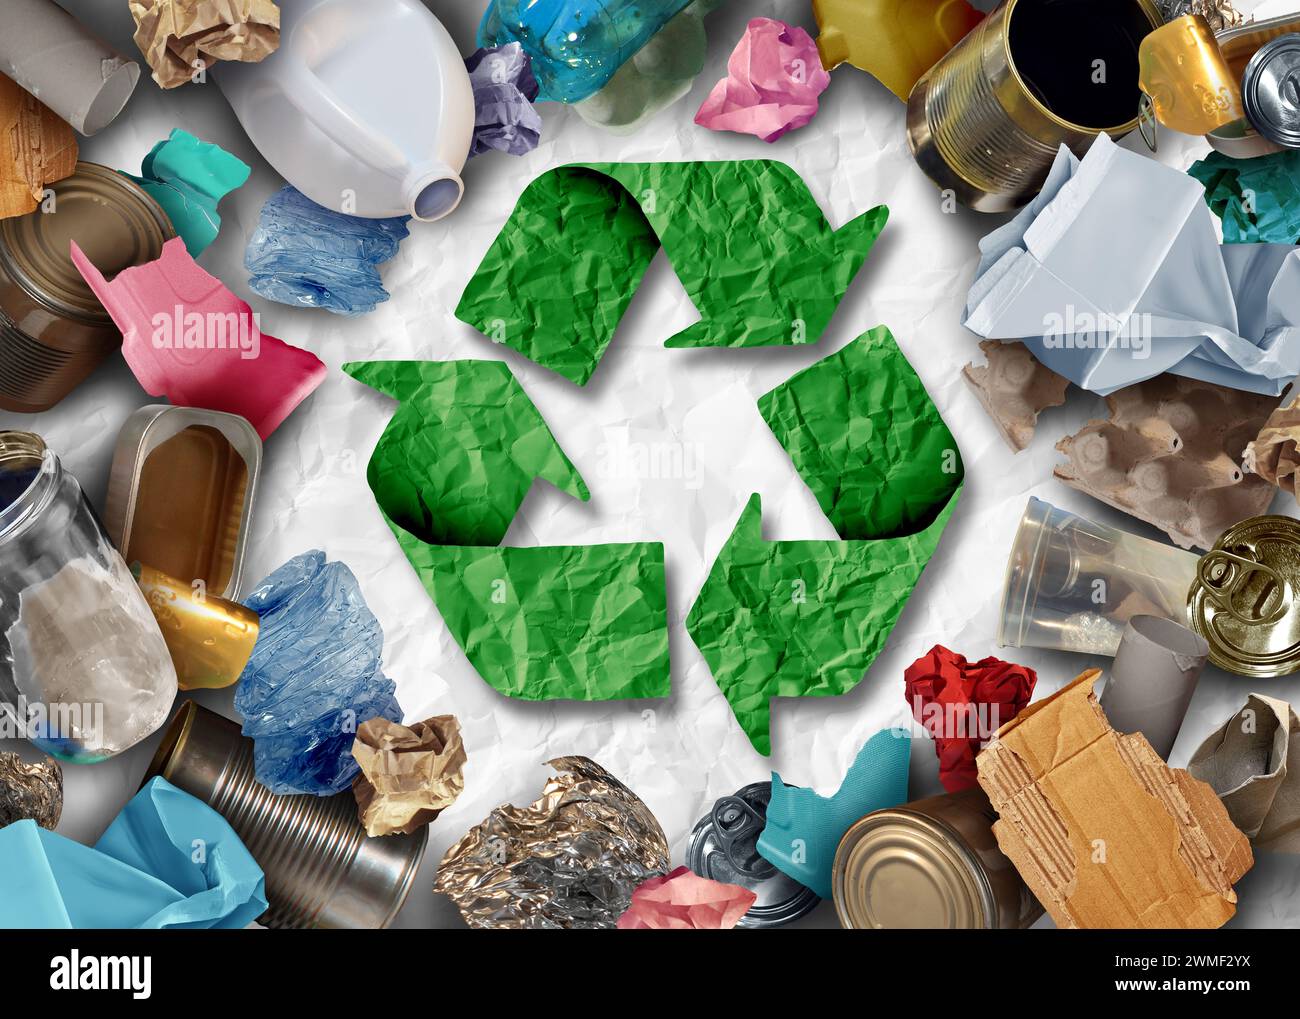 Recycling soziale Frage, Abfall und Müll als wiederverwendbare Gegenstände zu recyceln, wie altes Papier, Glas, Metall und Plastik, das in einem Abfallbehälter geworfen wird Stockfoto